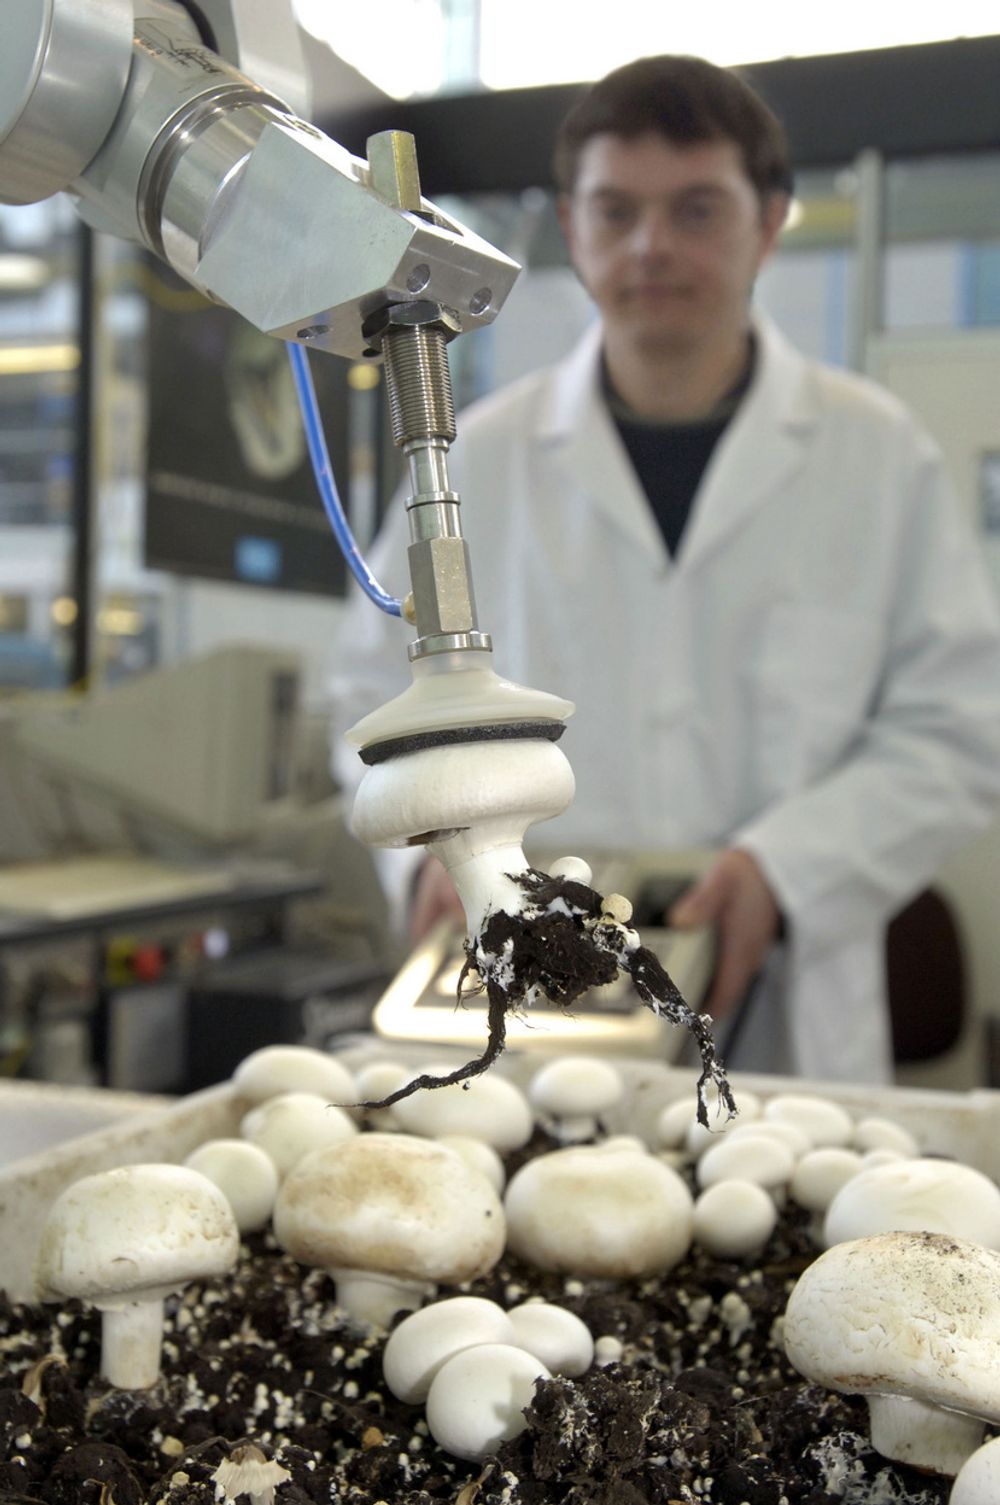 PLUKKEMANN: Roboter utvikles nå for å høste perfekt sopp på perfekt måte, med liten plass for avvik i størrelse og form.